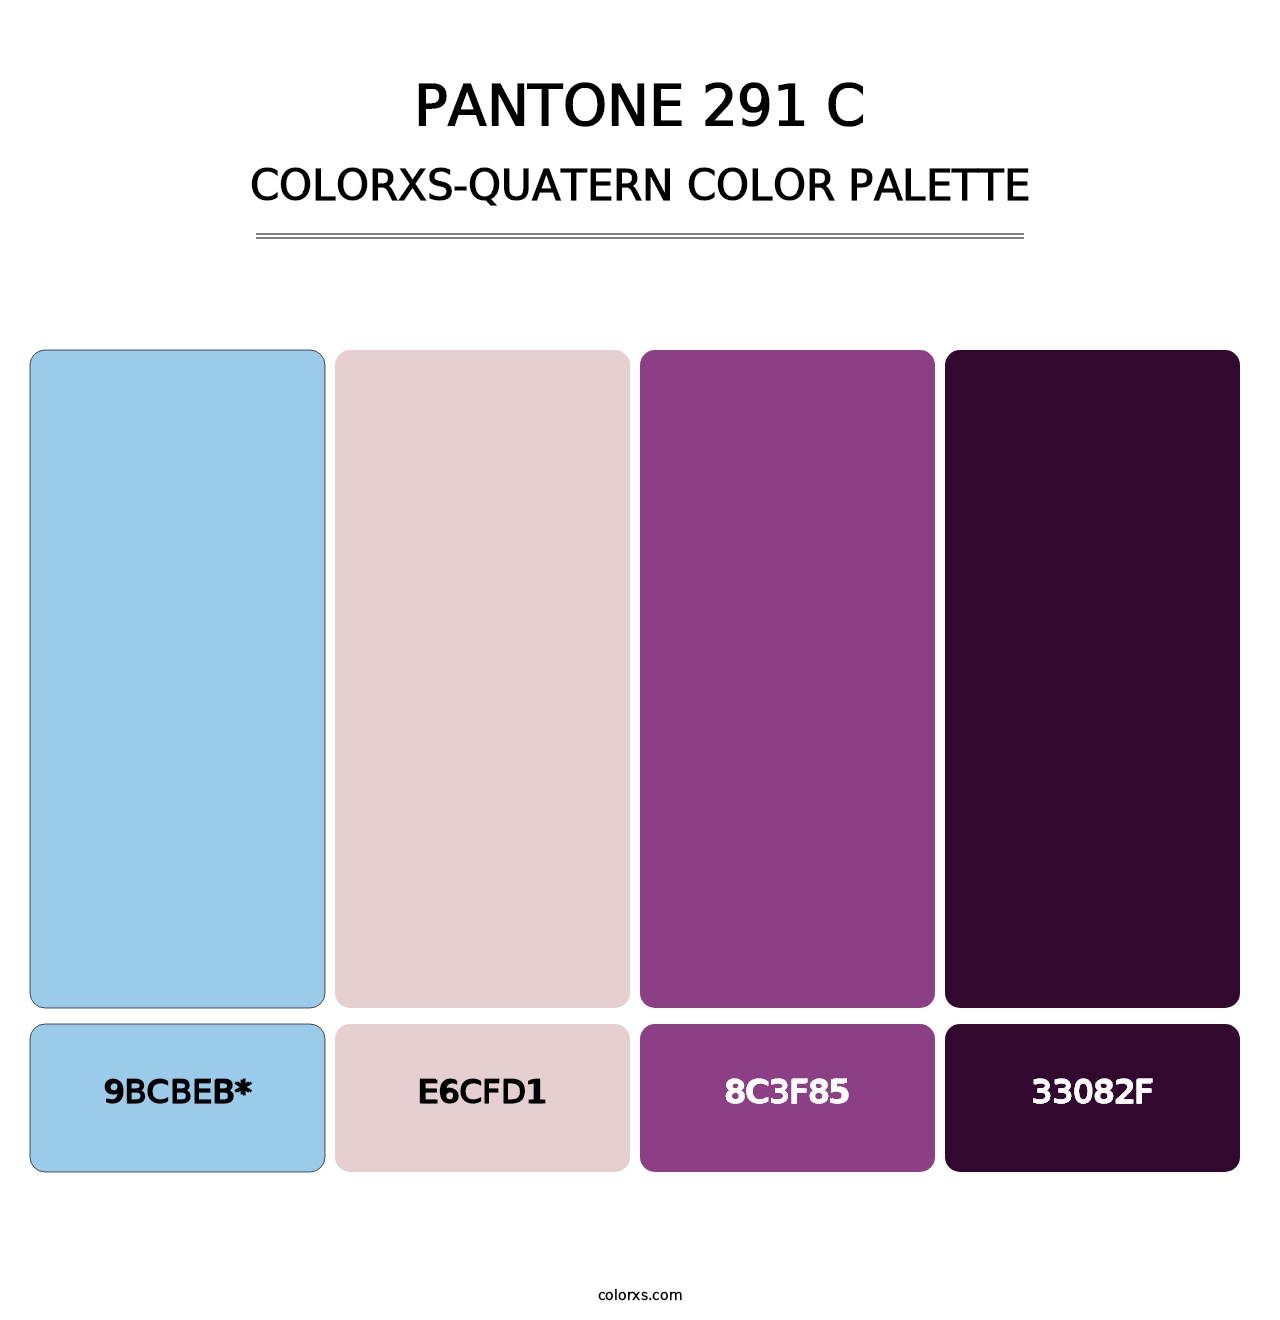 PANTONE 291 C - Colorxs Quad Palette